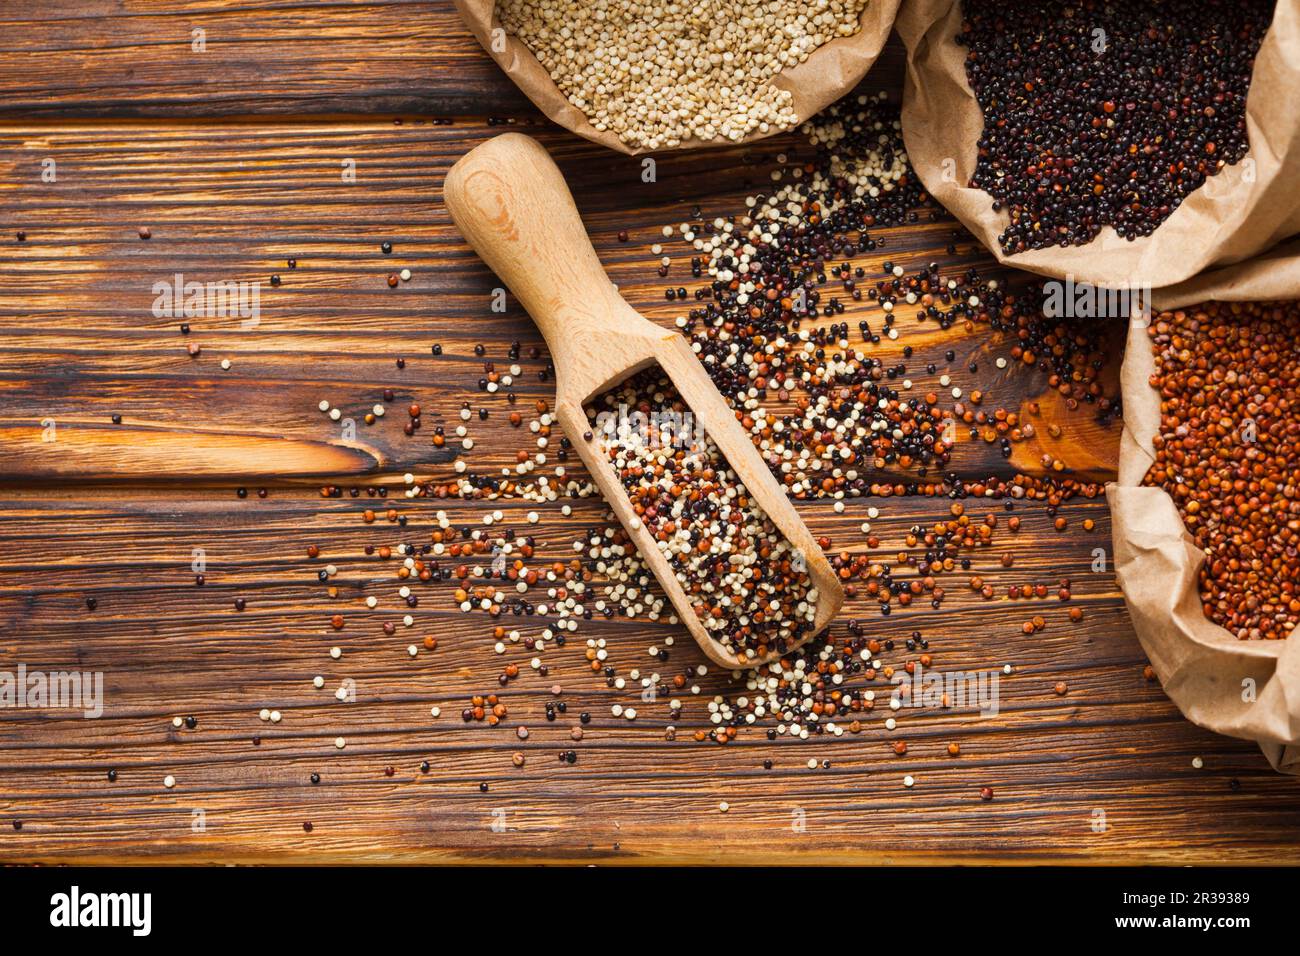 Le quinoa dans la boule en bois se disperse sur la table en bois Banque D'Images